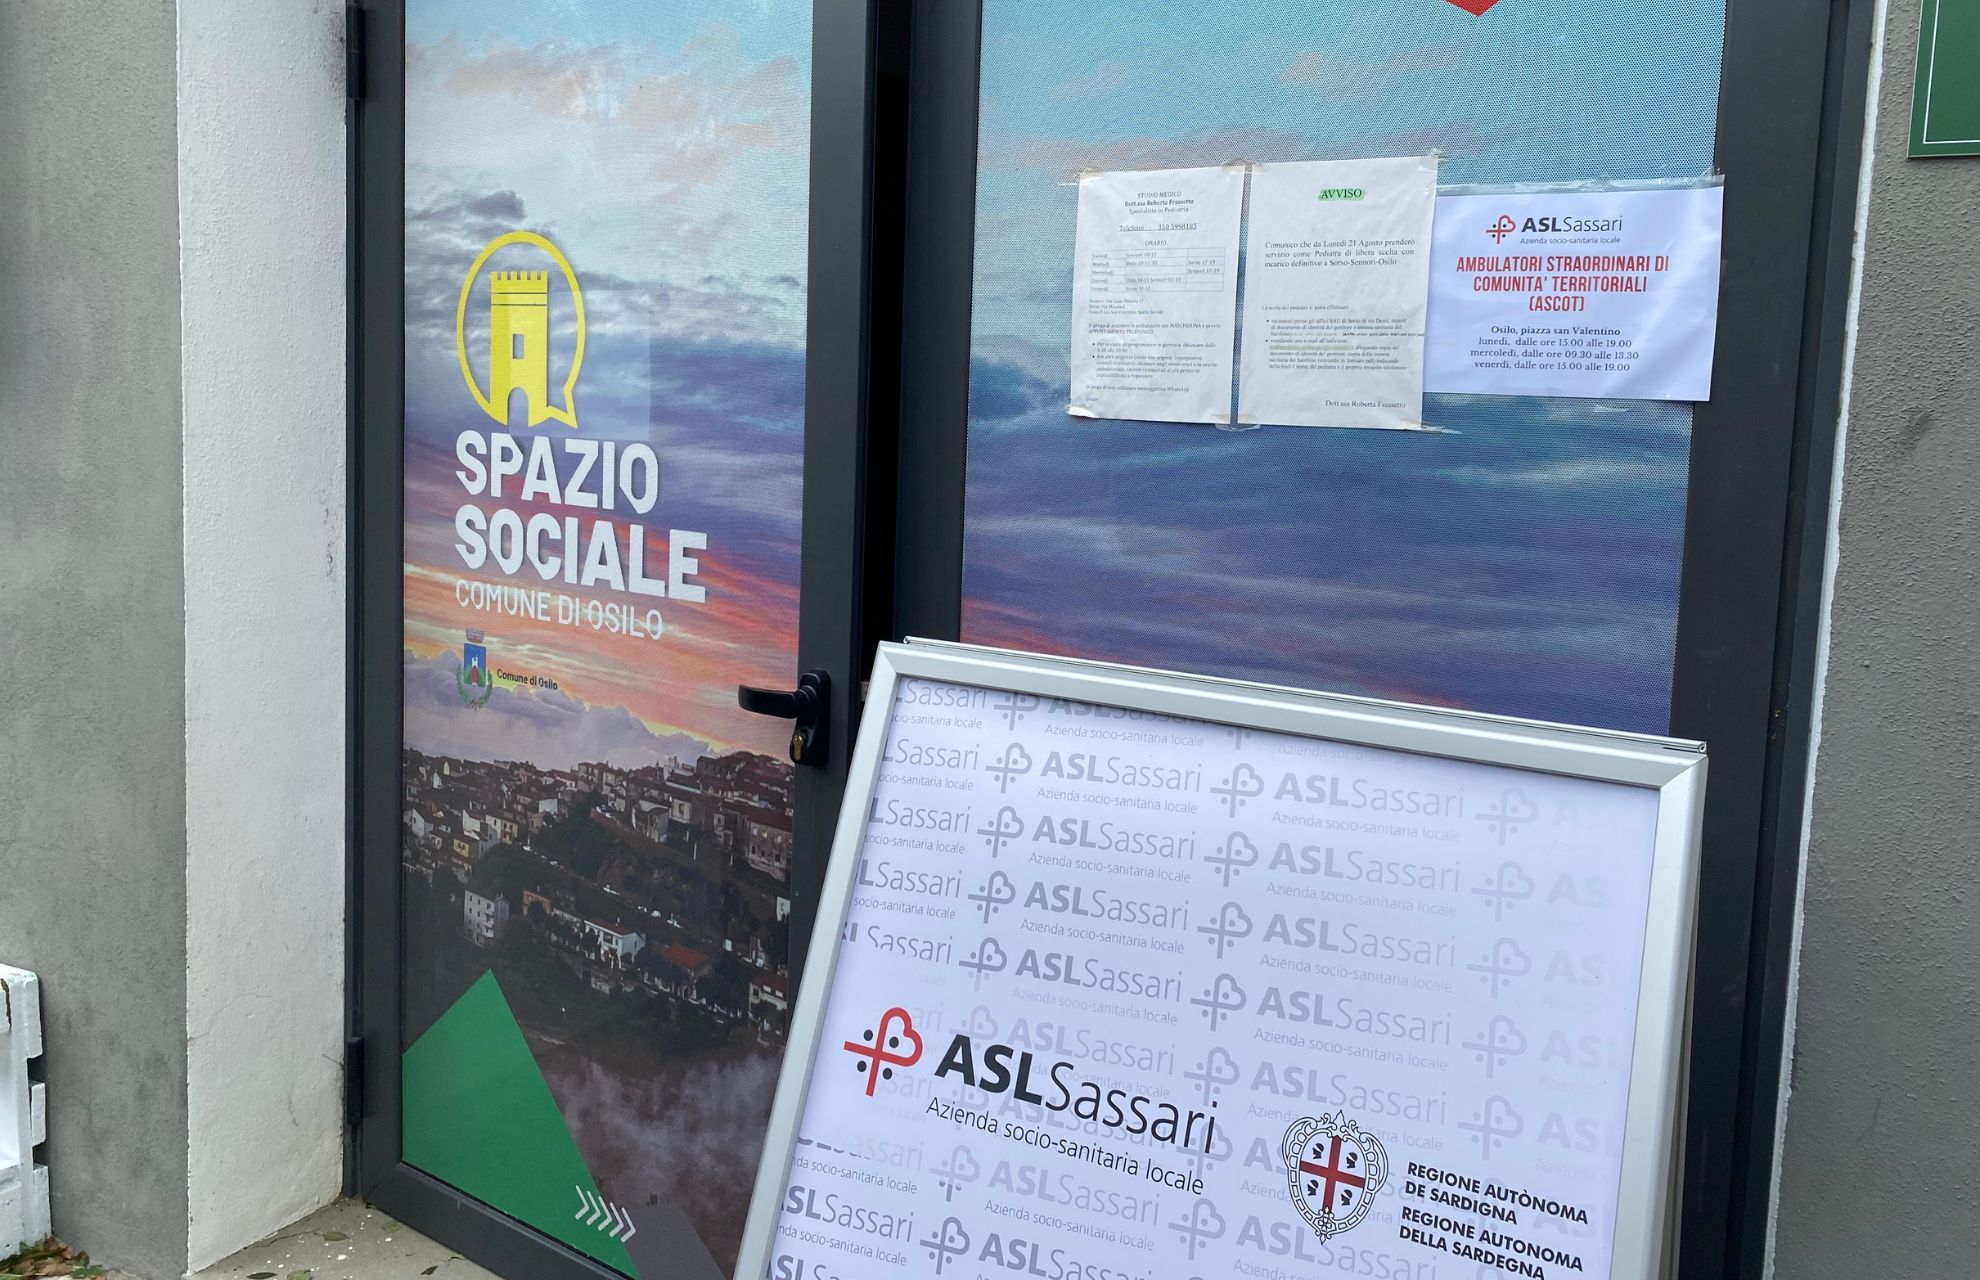 Asl Sassari: apre l’ambulatorio straordinario di comunità di Osilo